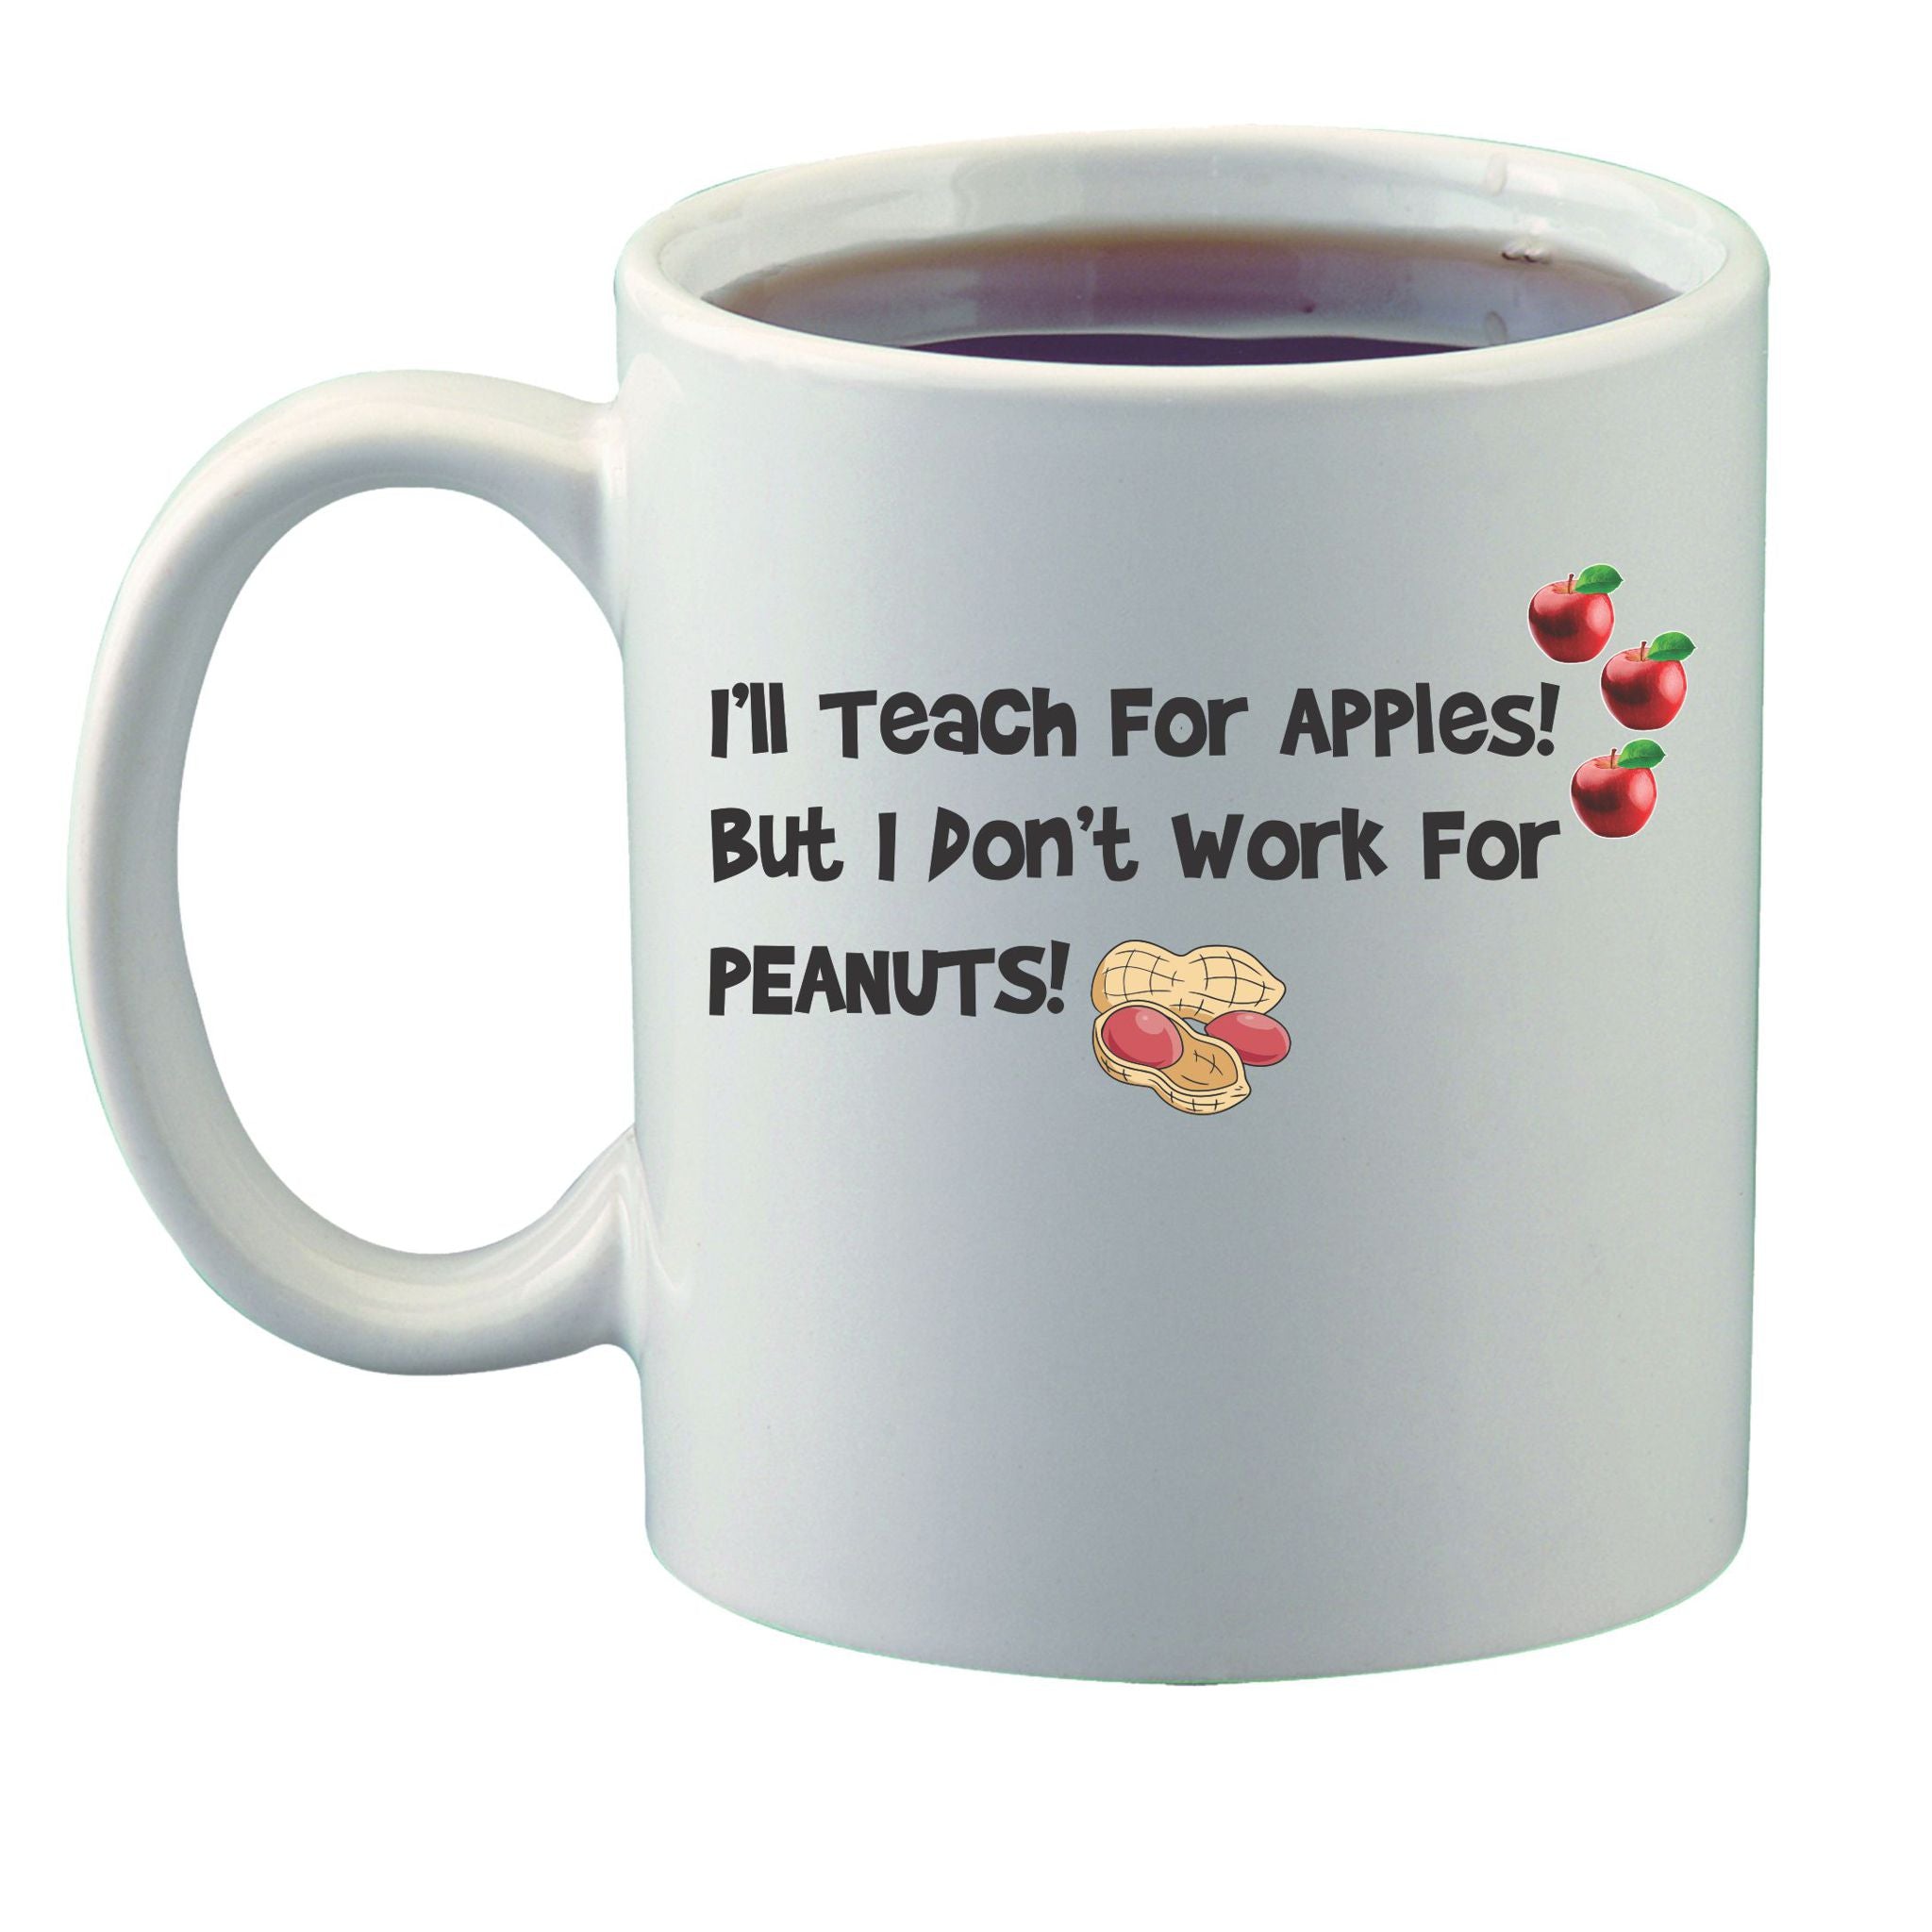 I'll Teach for Apples Mug - Perfect for Teachers